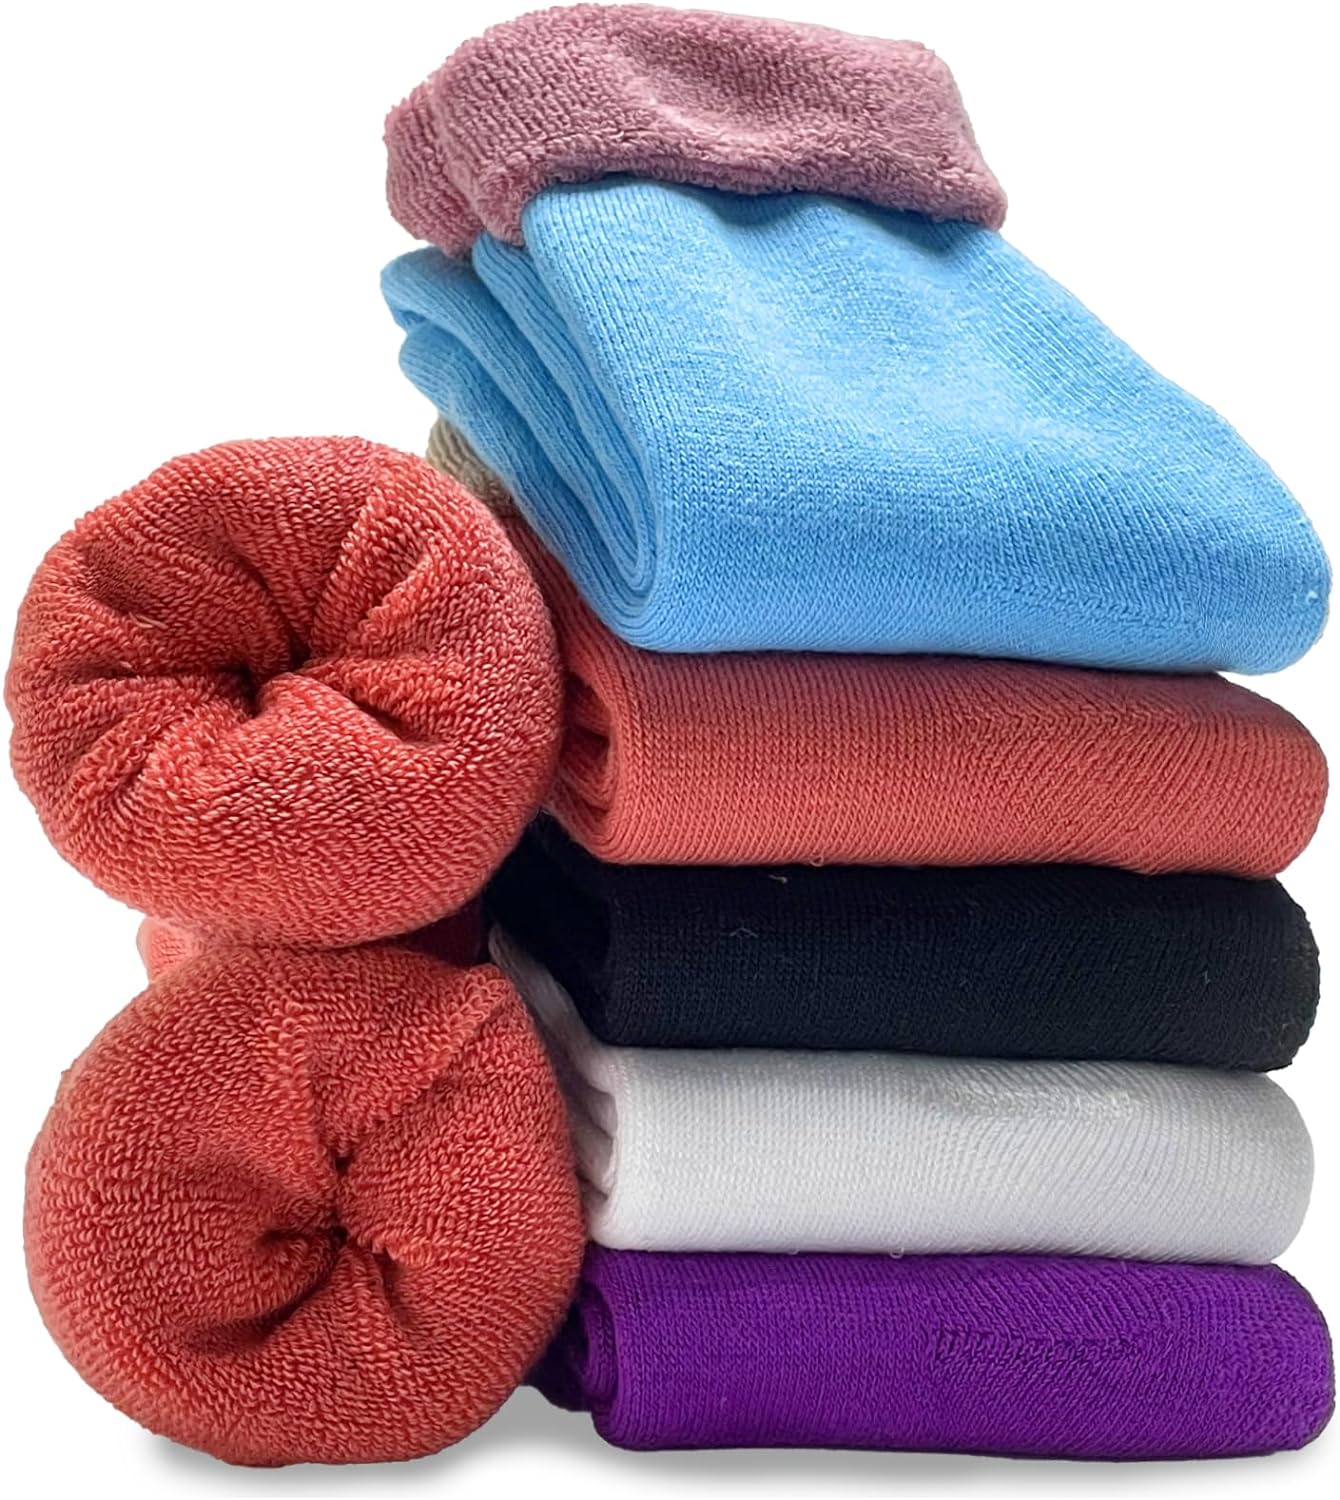 VoJoPi 5 Paires Chaussette Chaude Femme Hiver, Épaisses Thermiques Chaussettes Multicolors en Laine, Confortables et Respirantes de Douces Cadeau pour Femmes - fitnessterapy